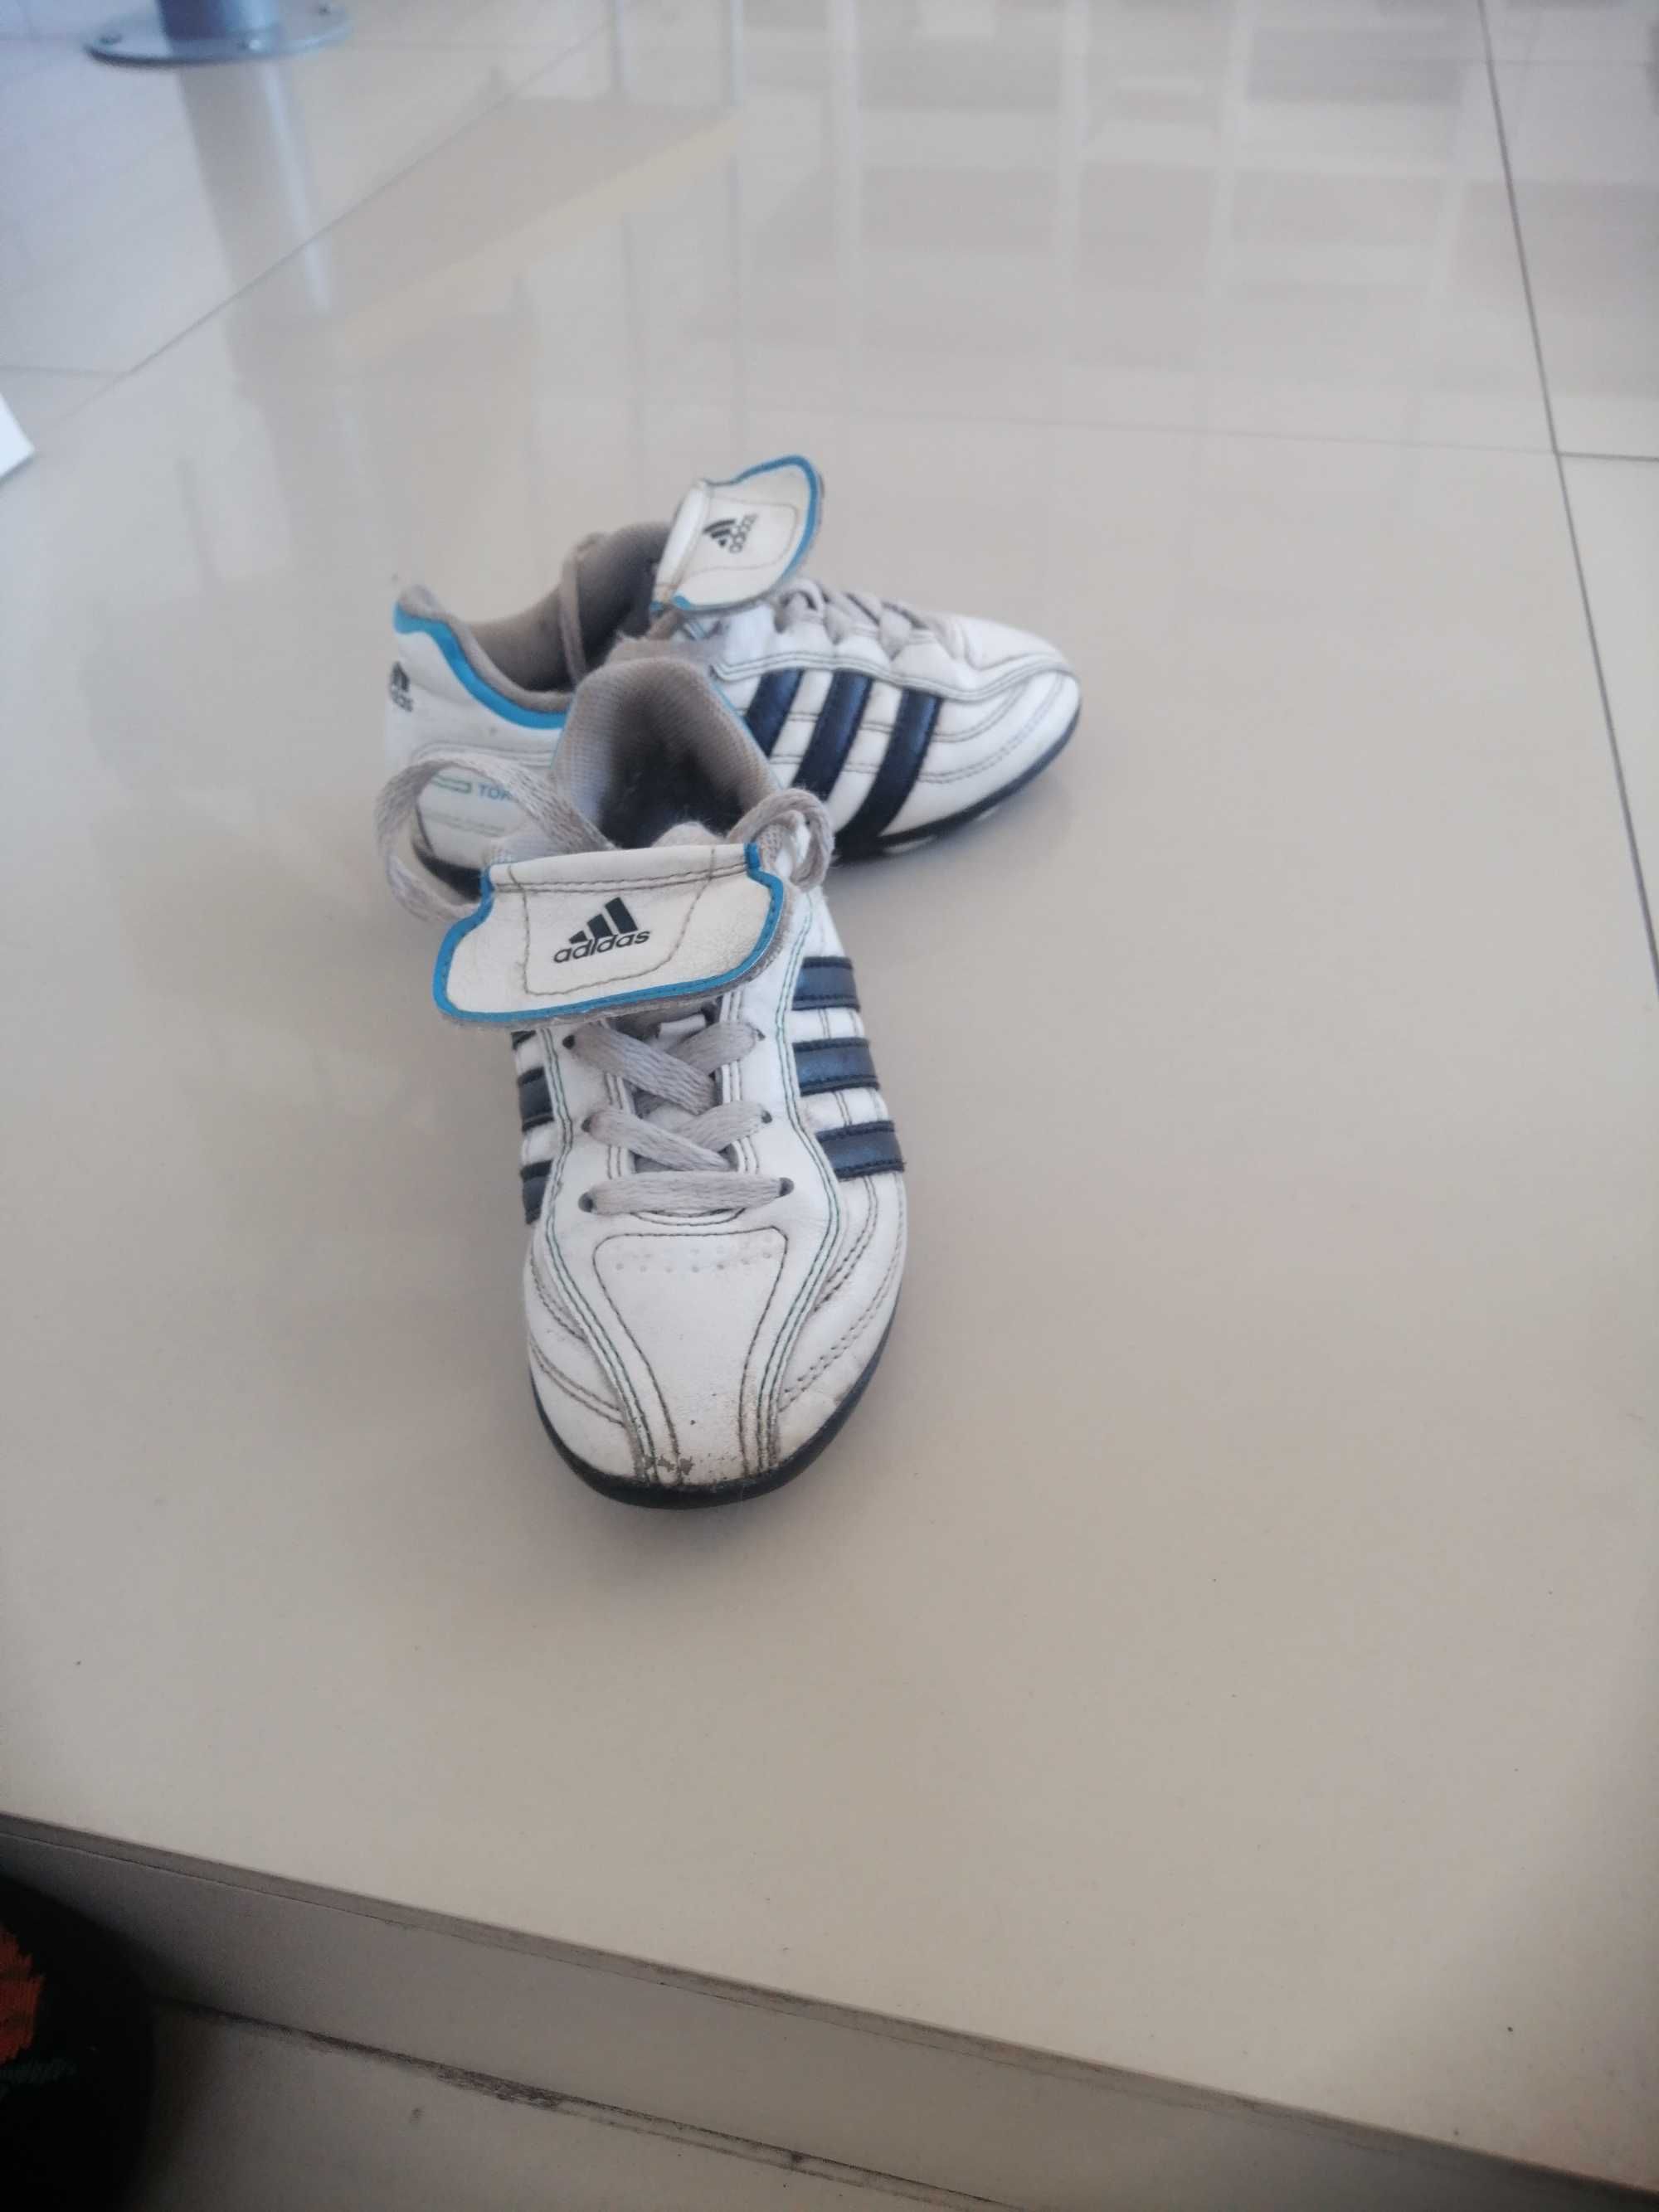 Adidas buty piłkarskie roz 29